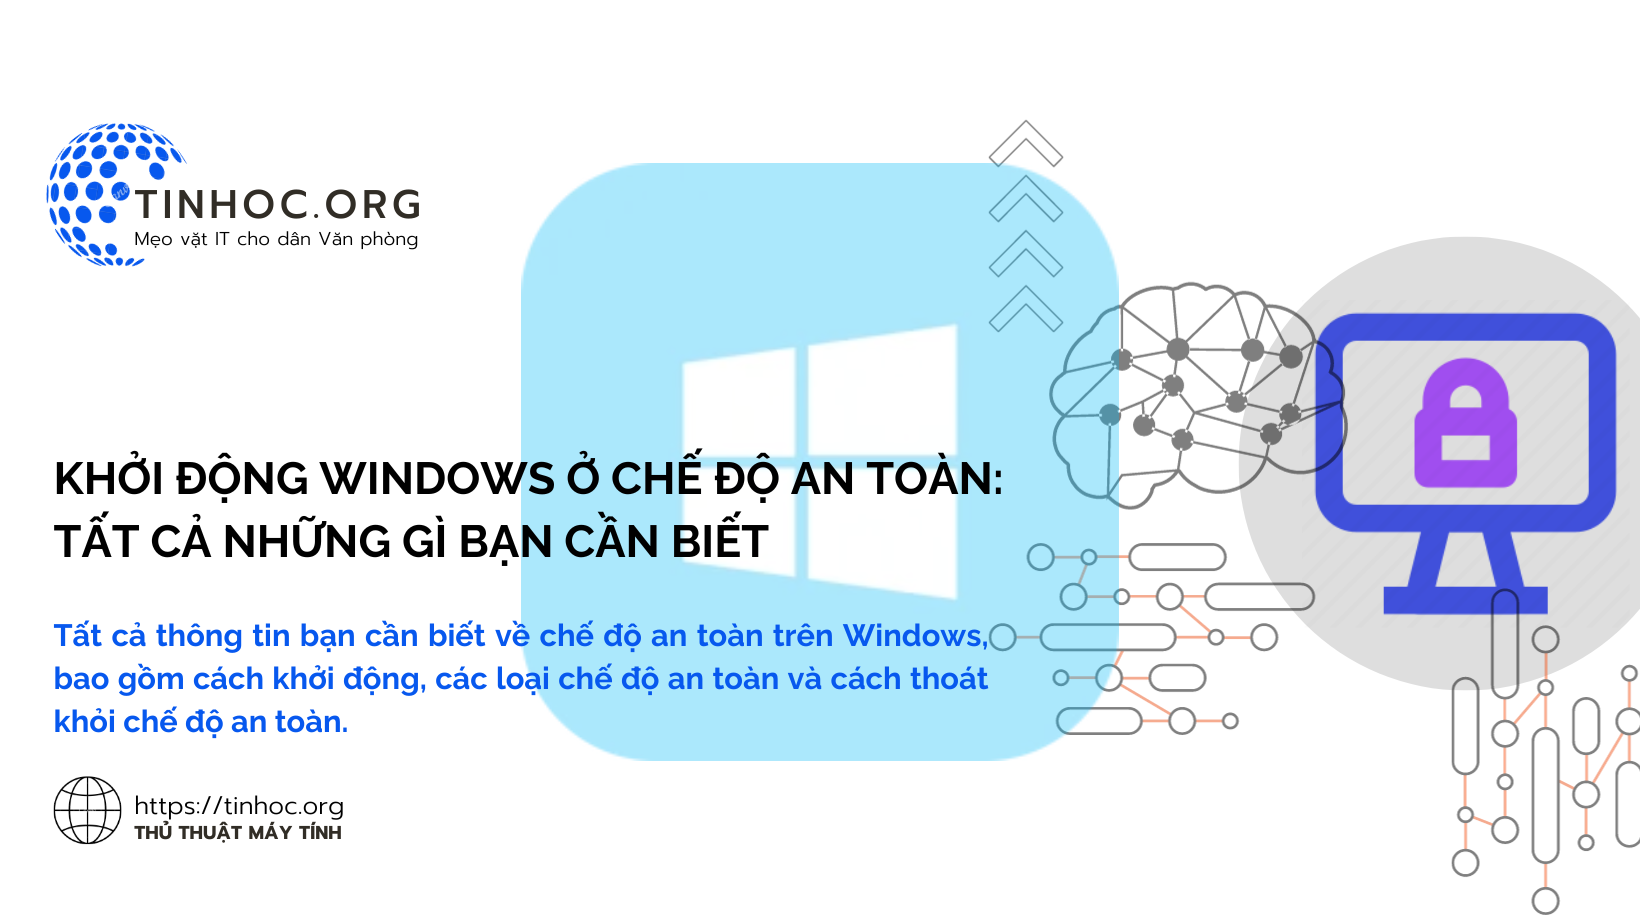 Khởi động Windows ở chế độ an toàn: Tất cả những gì bạn cần biết